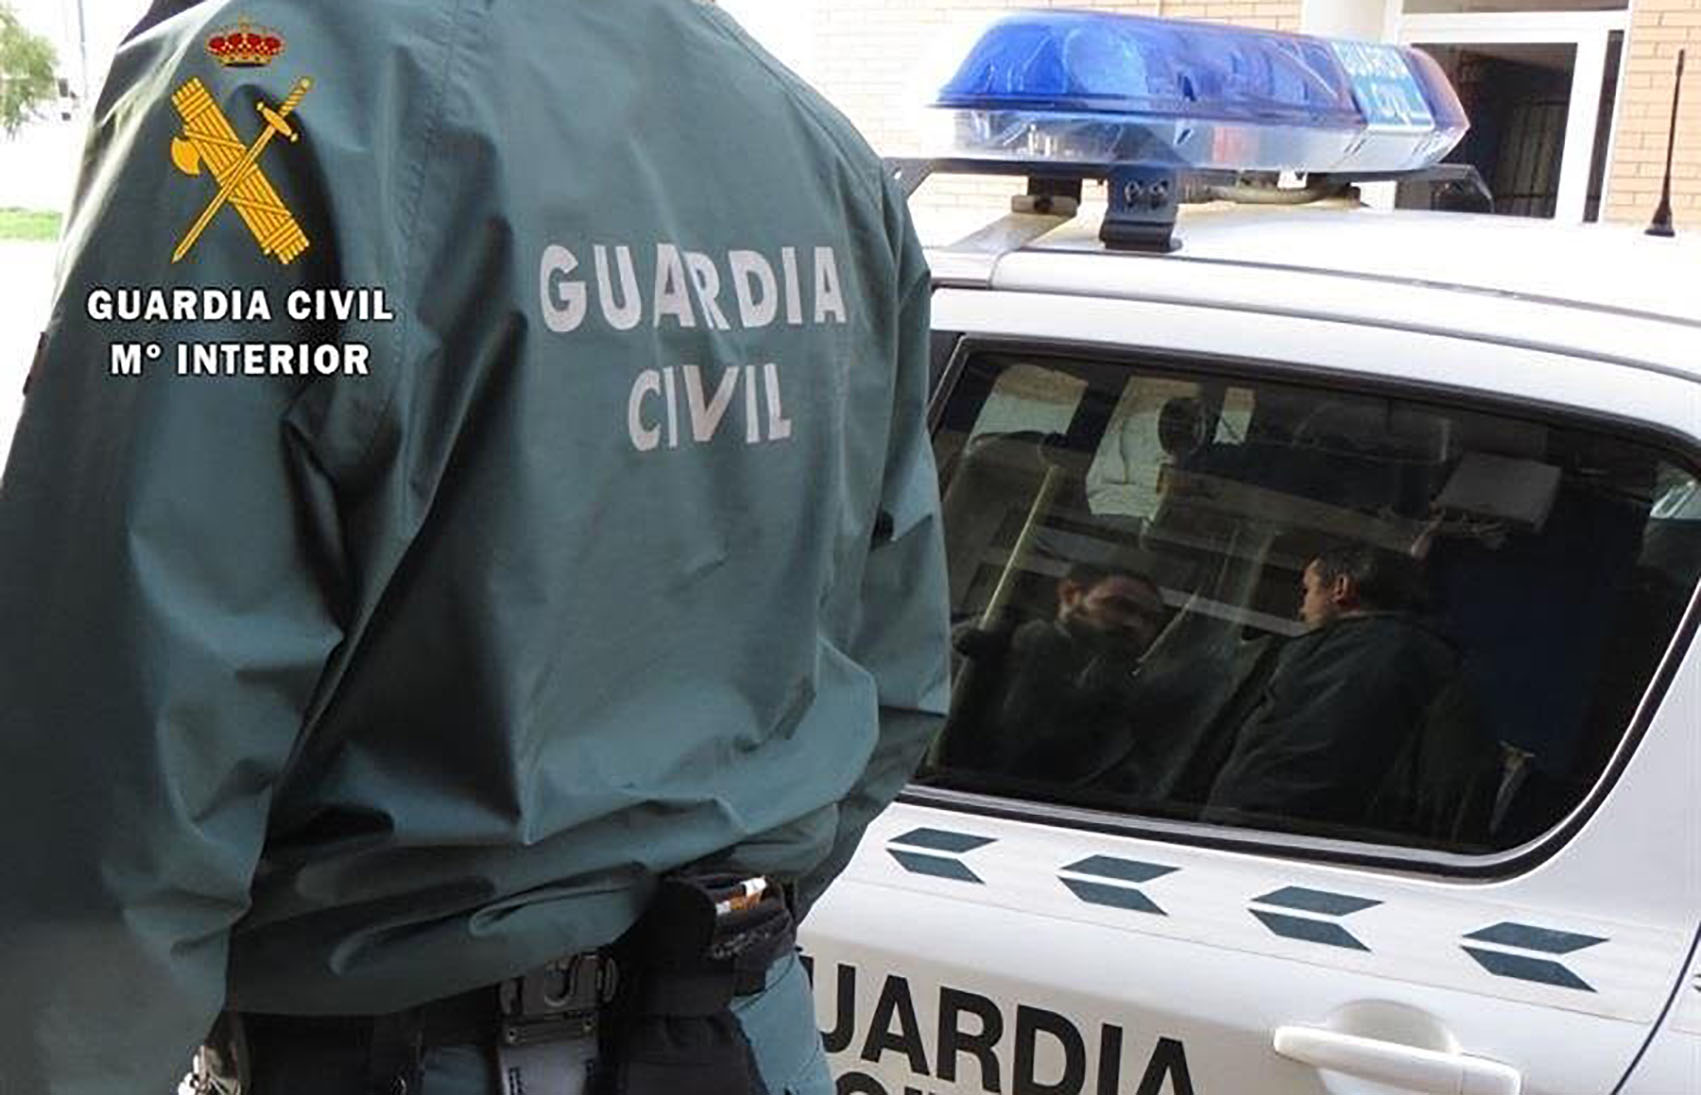 La Guardia Civil terminó deteniendo al conductor sin carné al sufrir un accidente en Talavera.